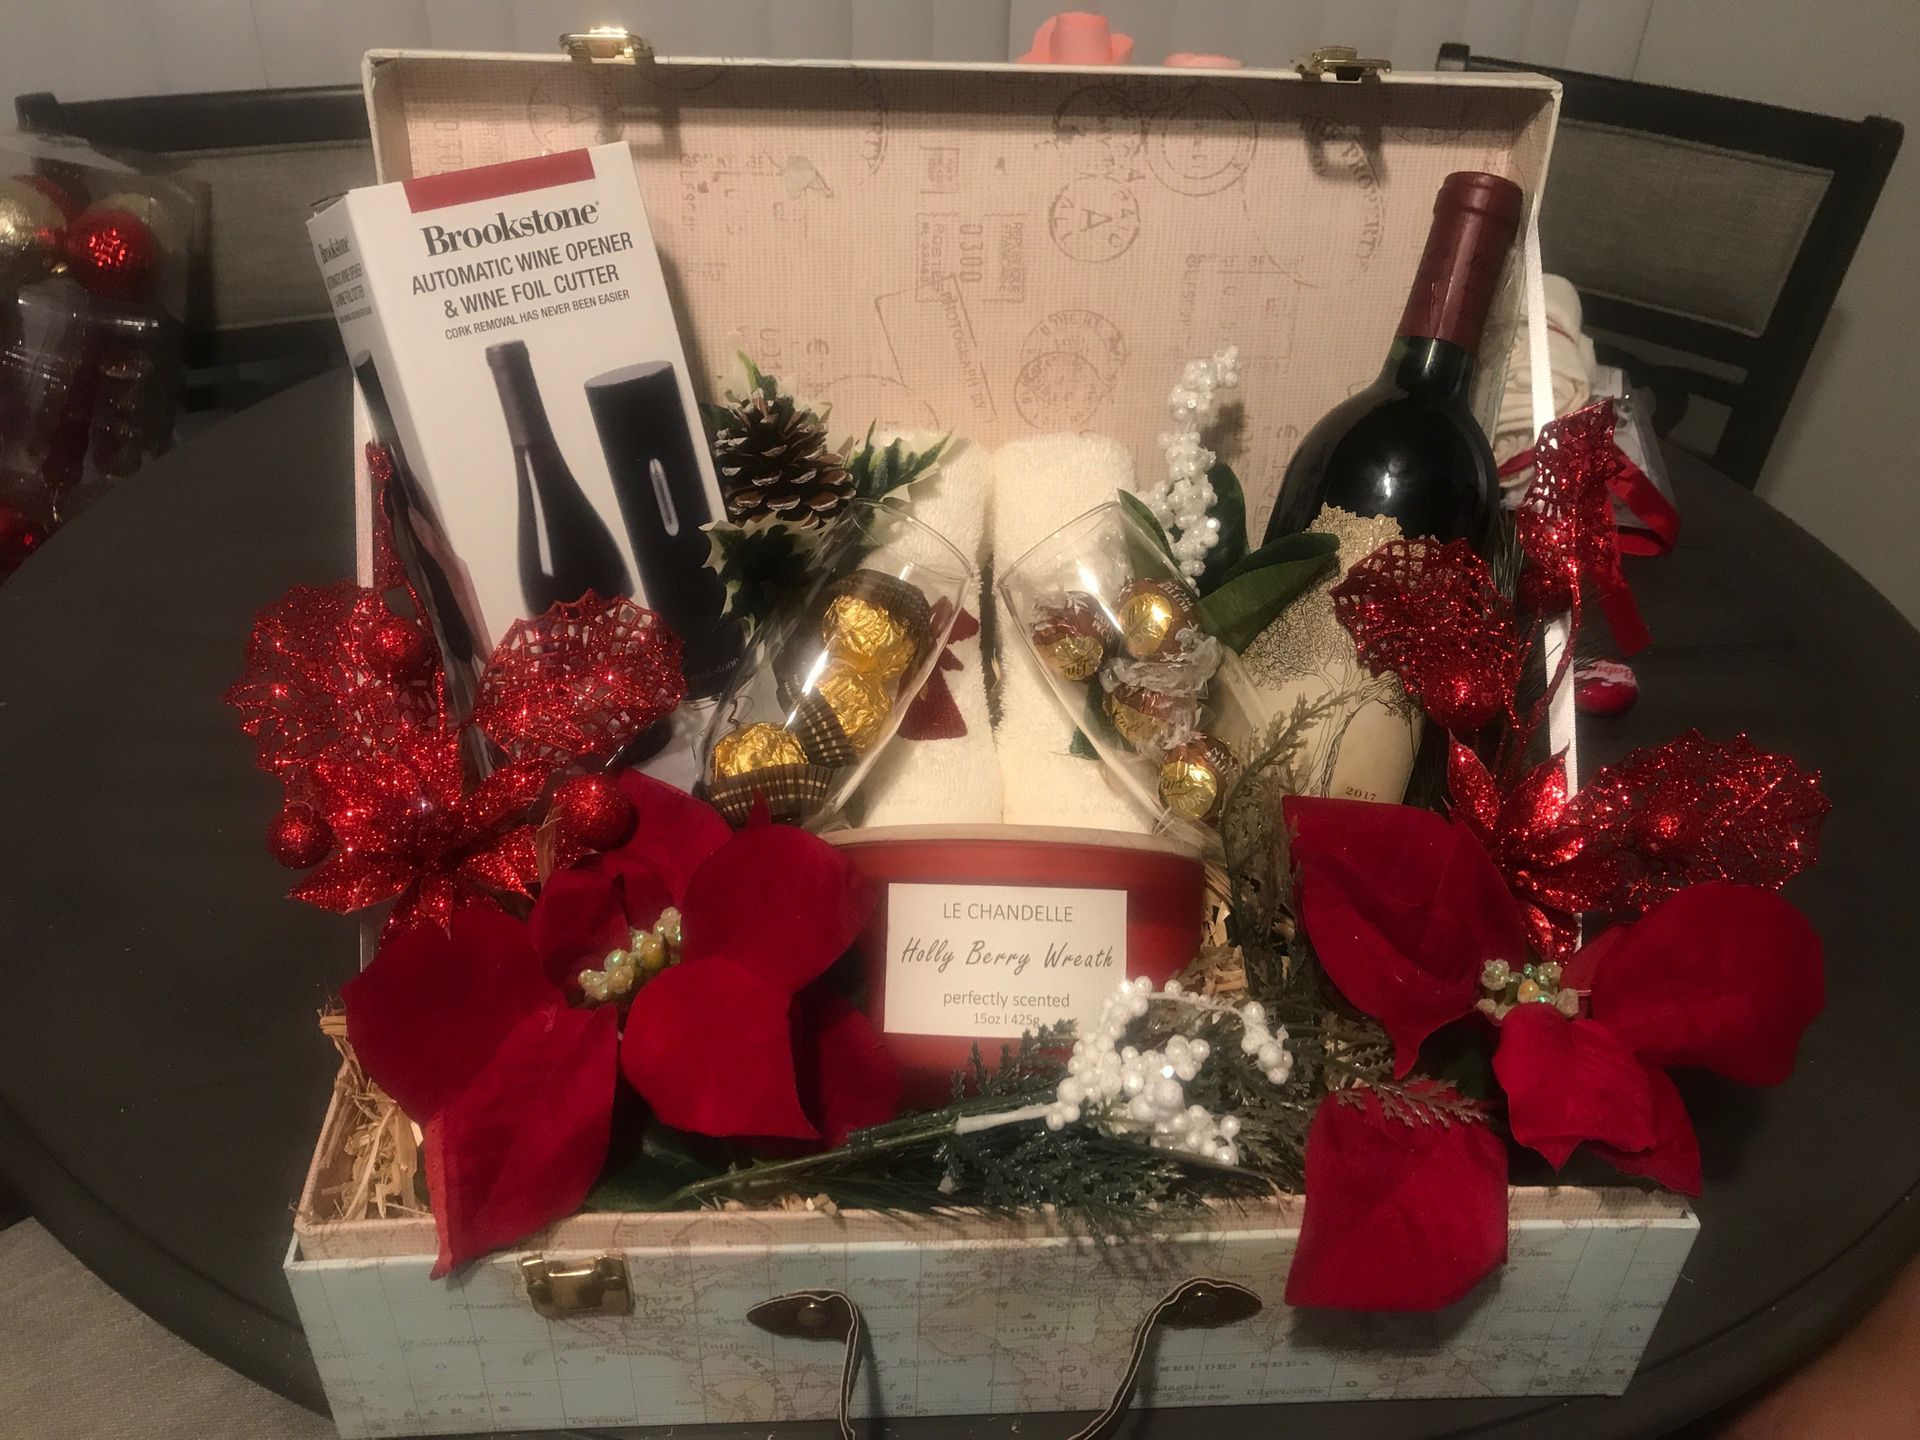 Customized wine & liquor gift boxes/basket